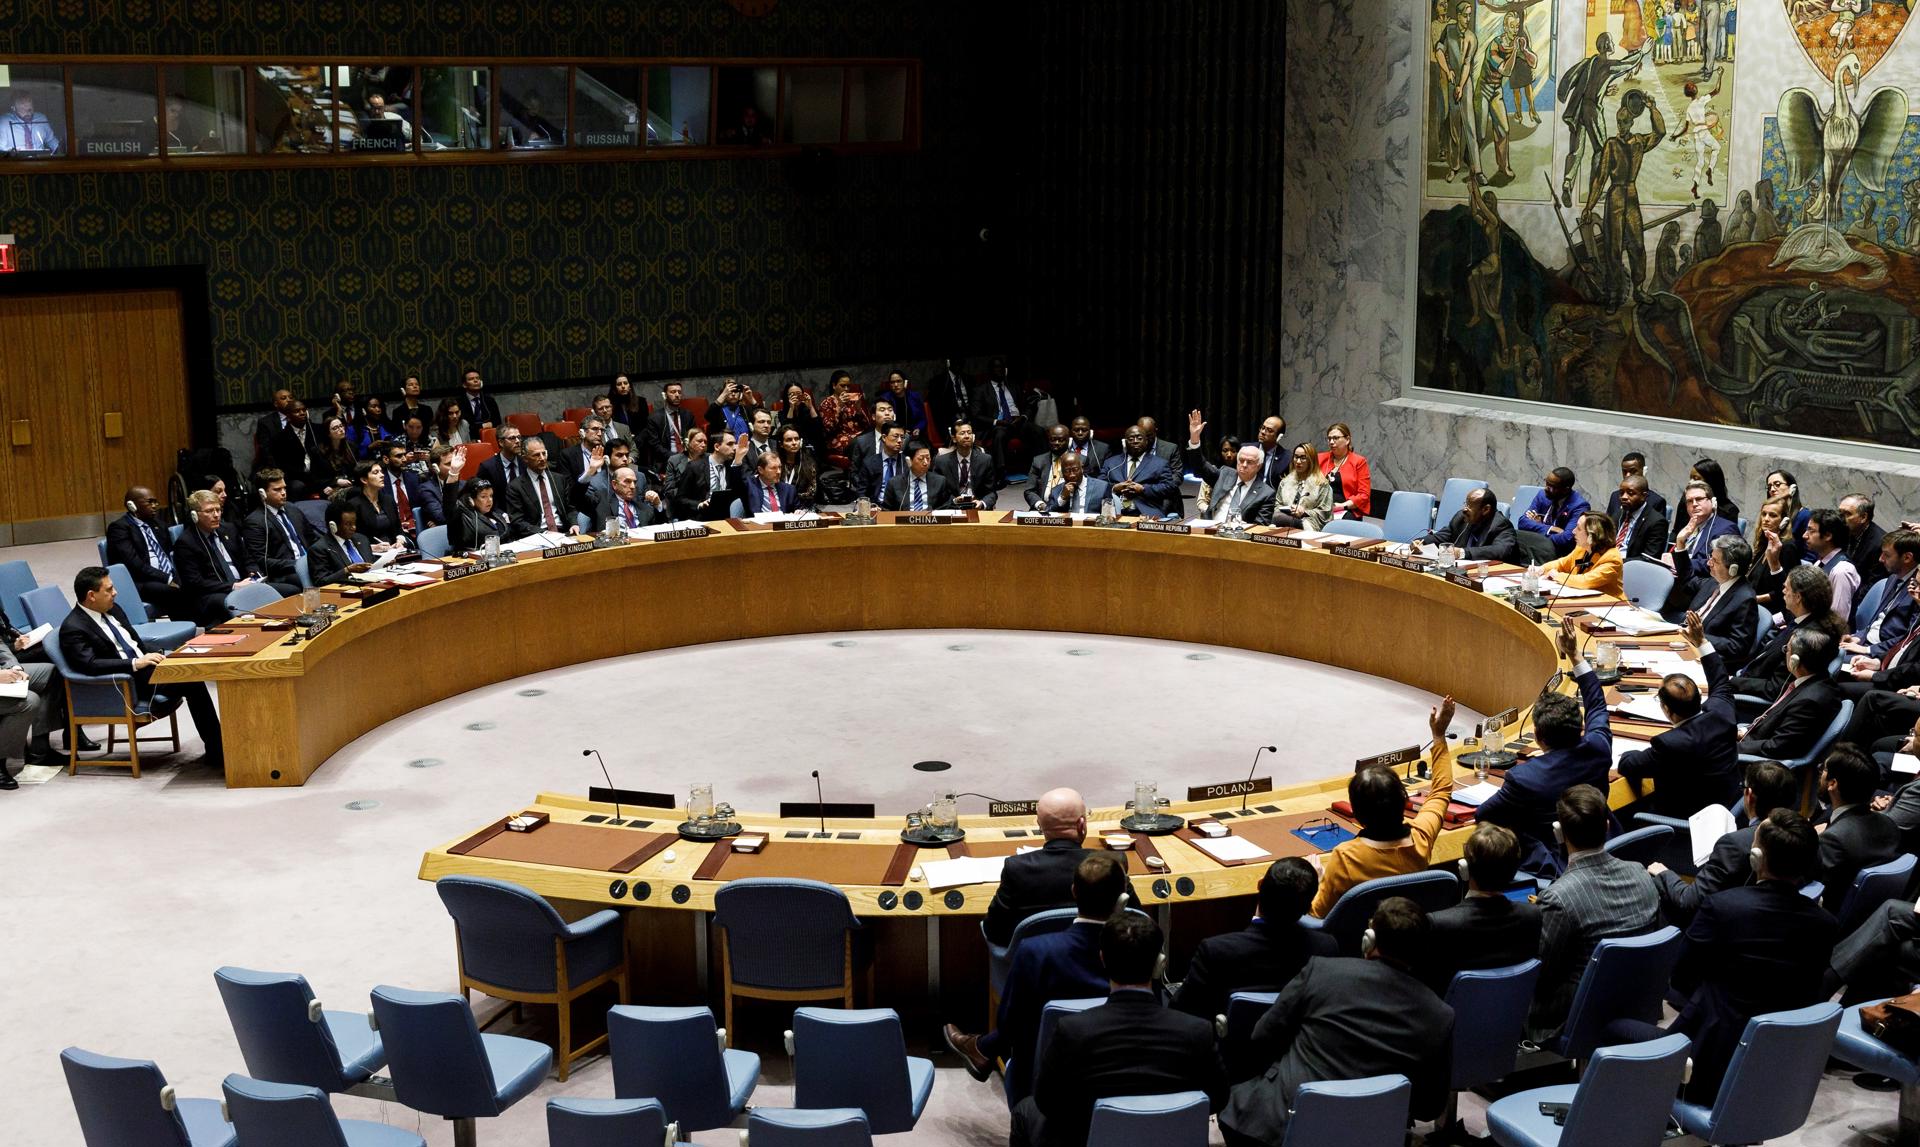 Vista de una votación durante un Consejo de Seguridad de las Naciones Unidas, en una fotografía de archivo. EFE/Justin Lane